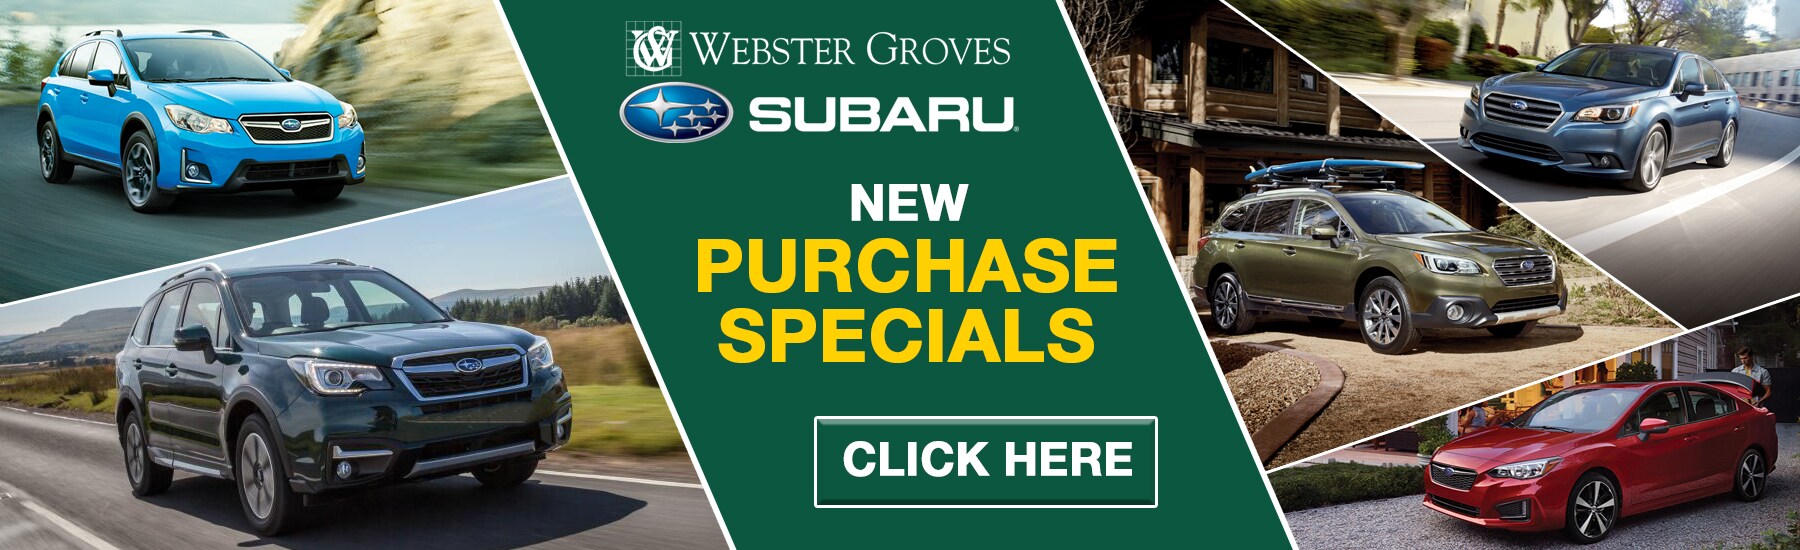 Webster Groves Subaru | St Louis Subaru Dealer | New Subaru, Used Car Dealership, Service Saint ...